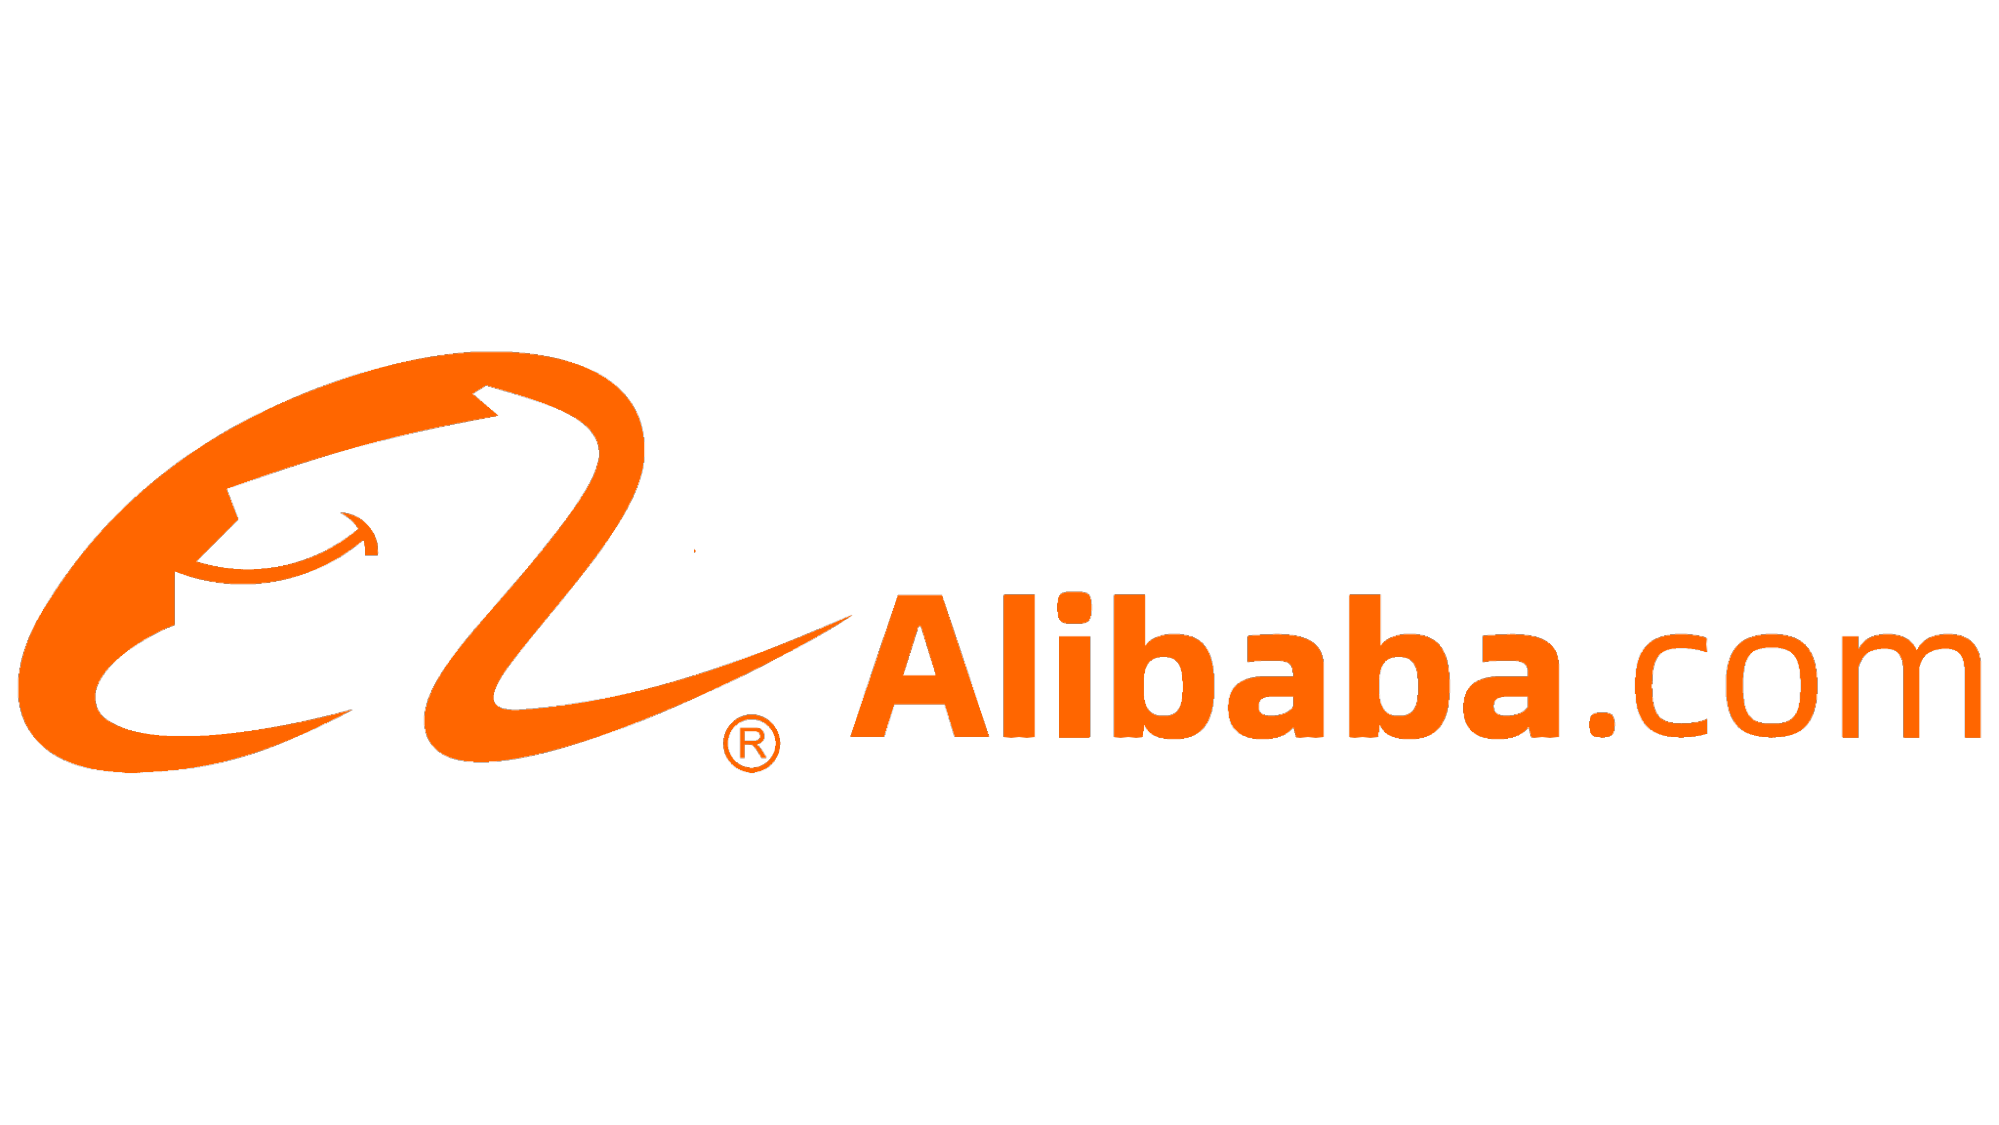 Alibaba Logo 1